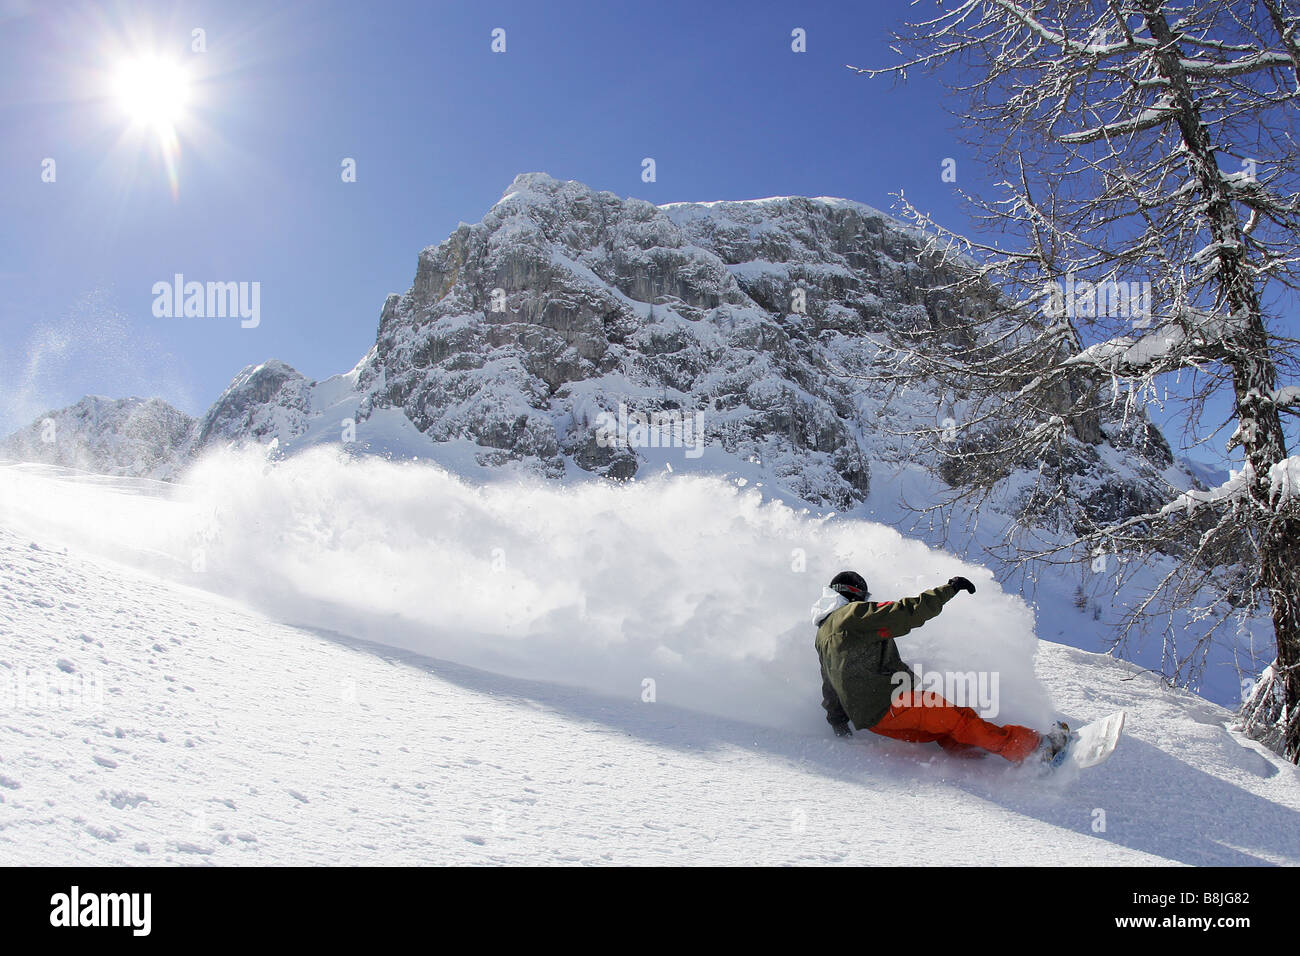 Snowboarder Maciek Swiatkowski going downhill in Nassfeld, Austria Stock Photo